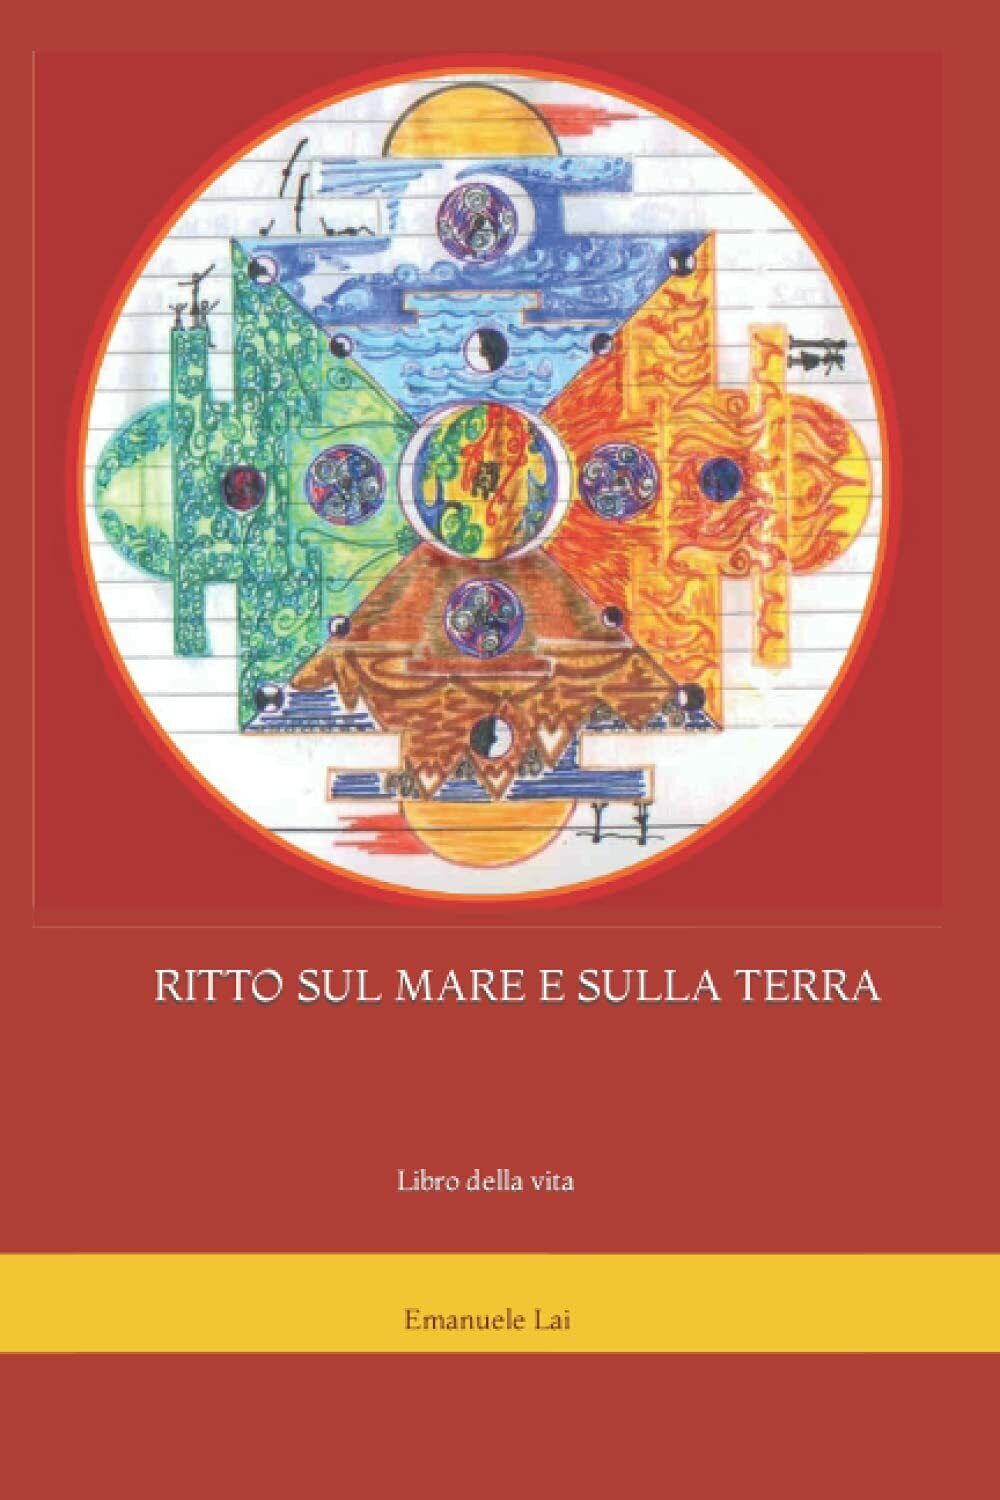 RITTO SUL MARE E SULLA TERRA: Libro della vita di Emanuele Aramu Lai,  2021,  In